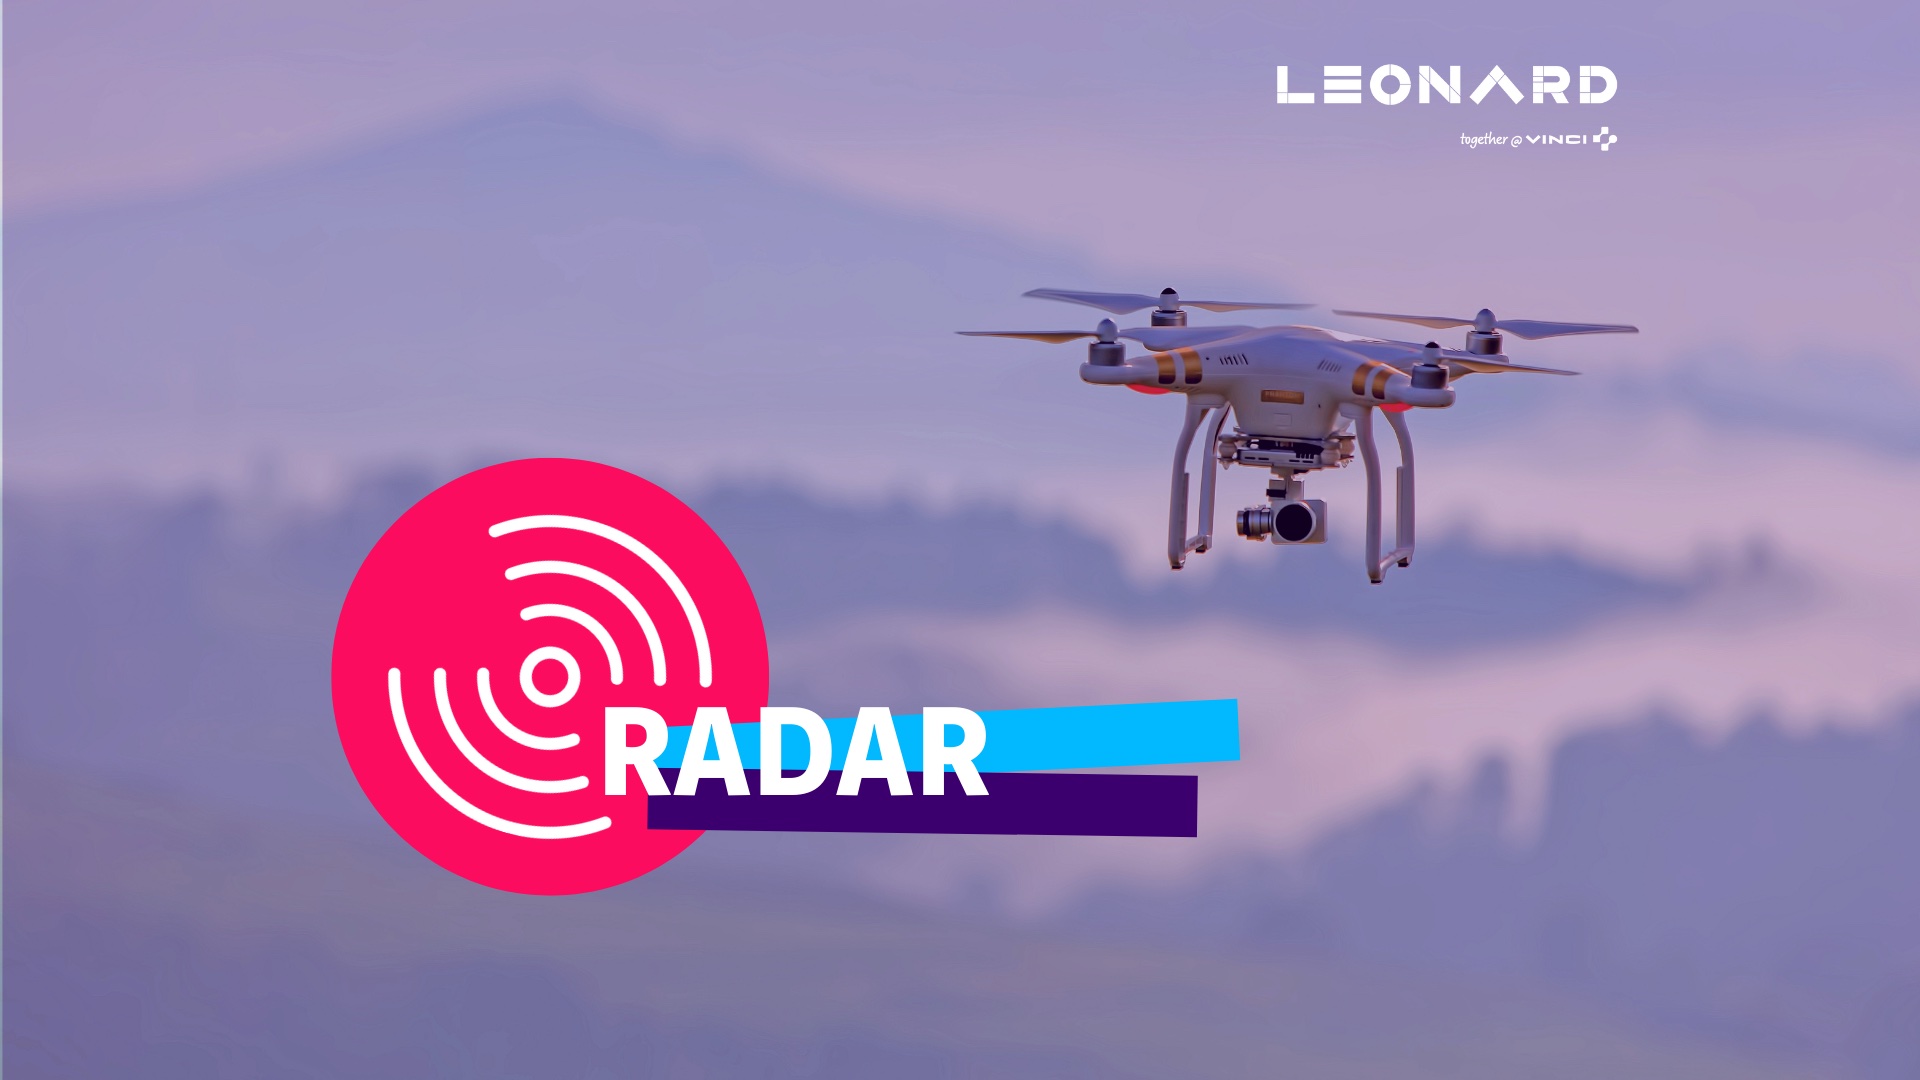 Radar – Notre sélection de business innovants #58